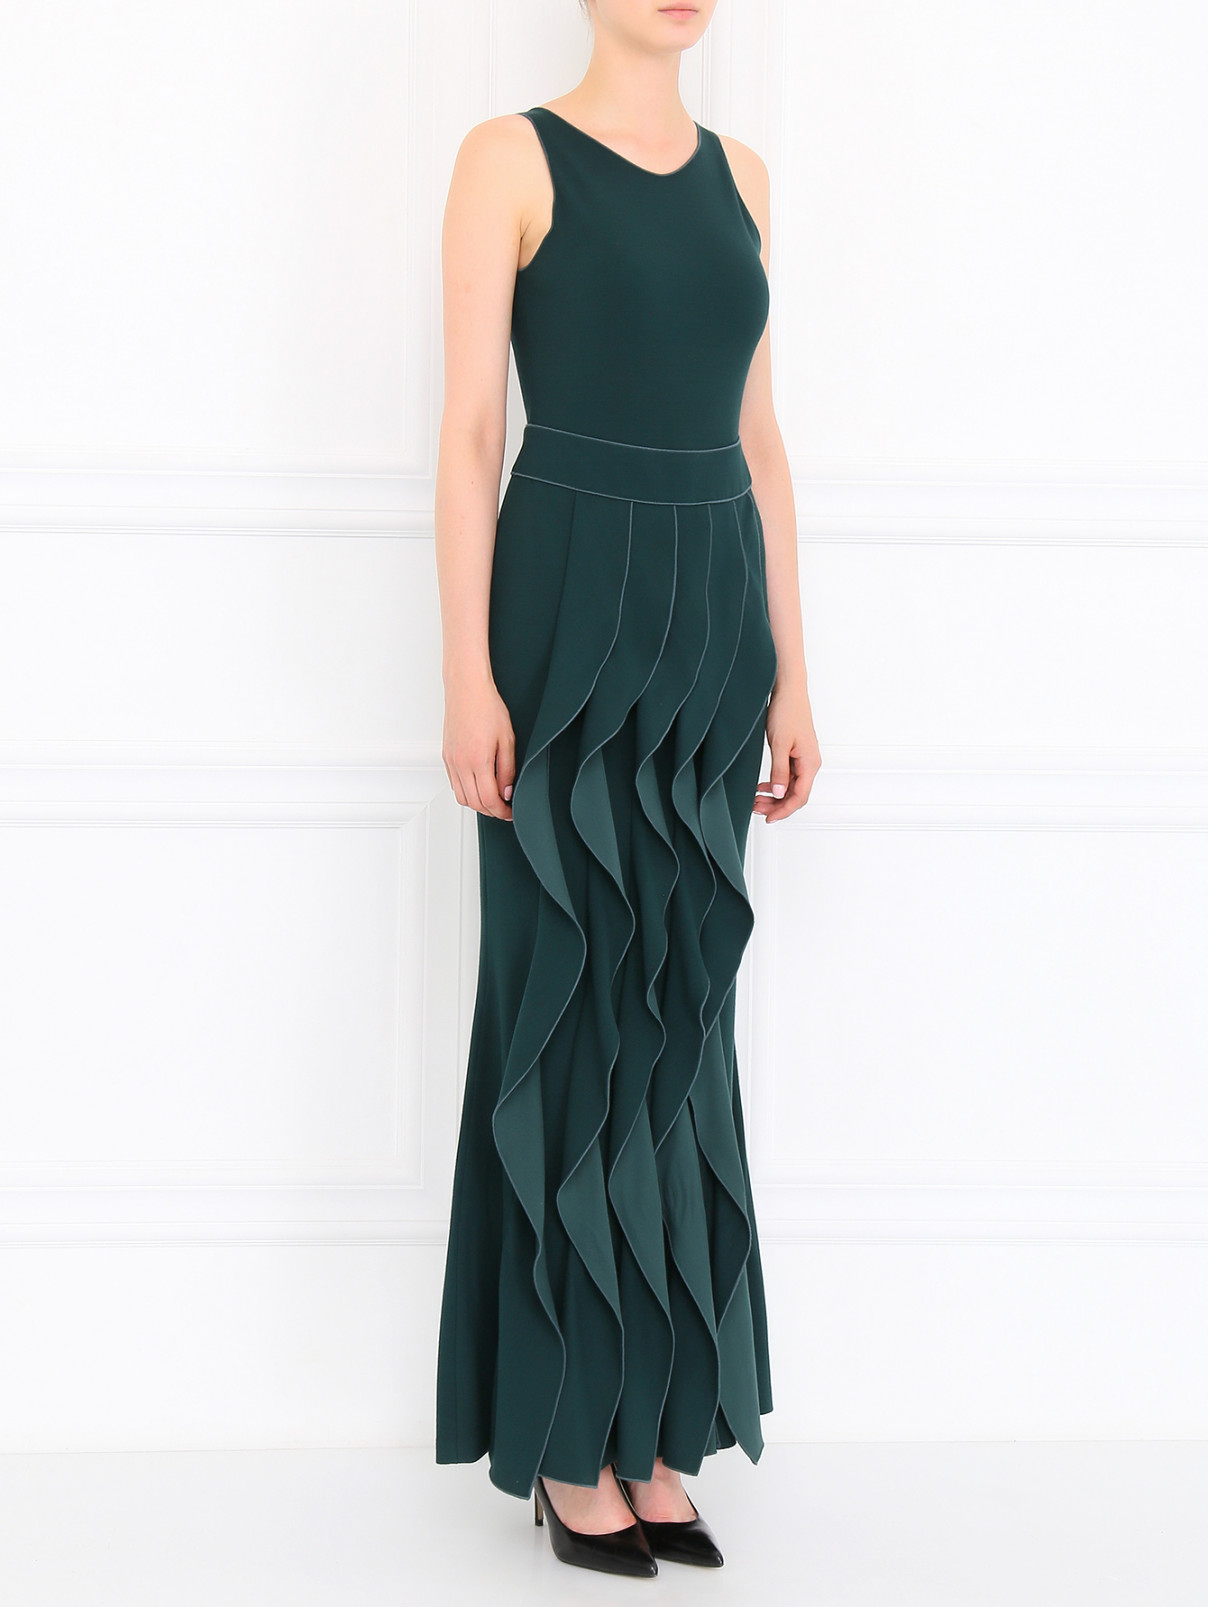 Платье-макси с драпировками Armani Collezioni  –  Модель Общий вид  – Цвет:  Зеленый